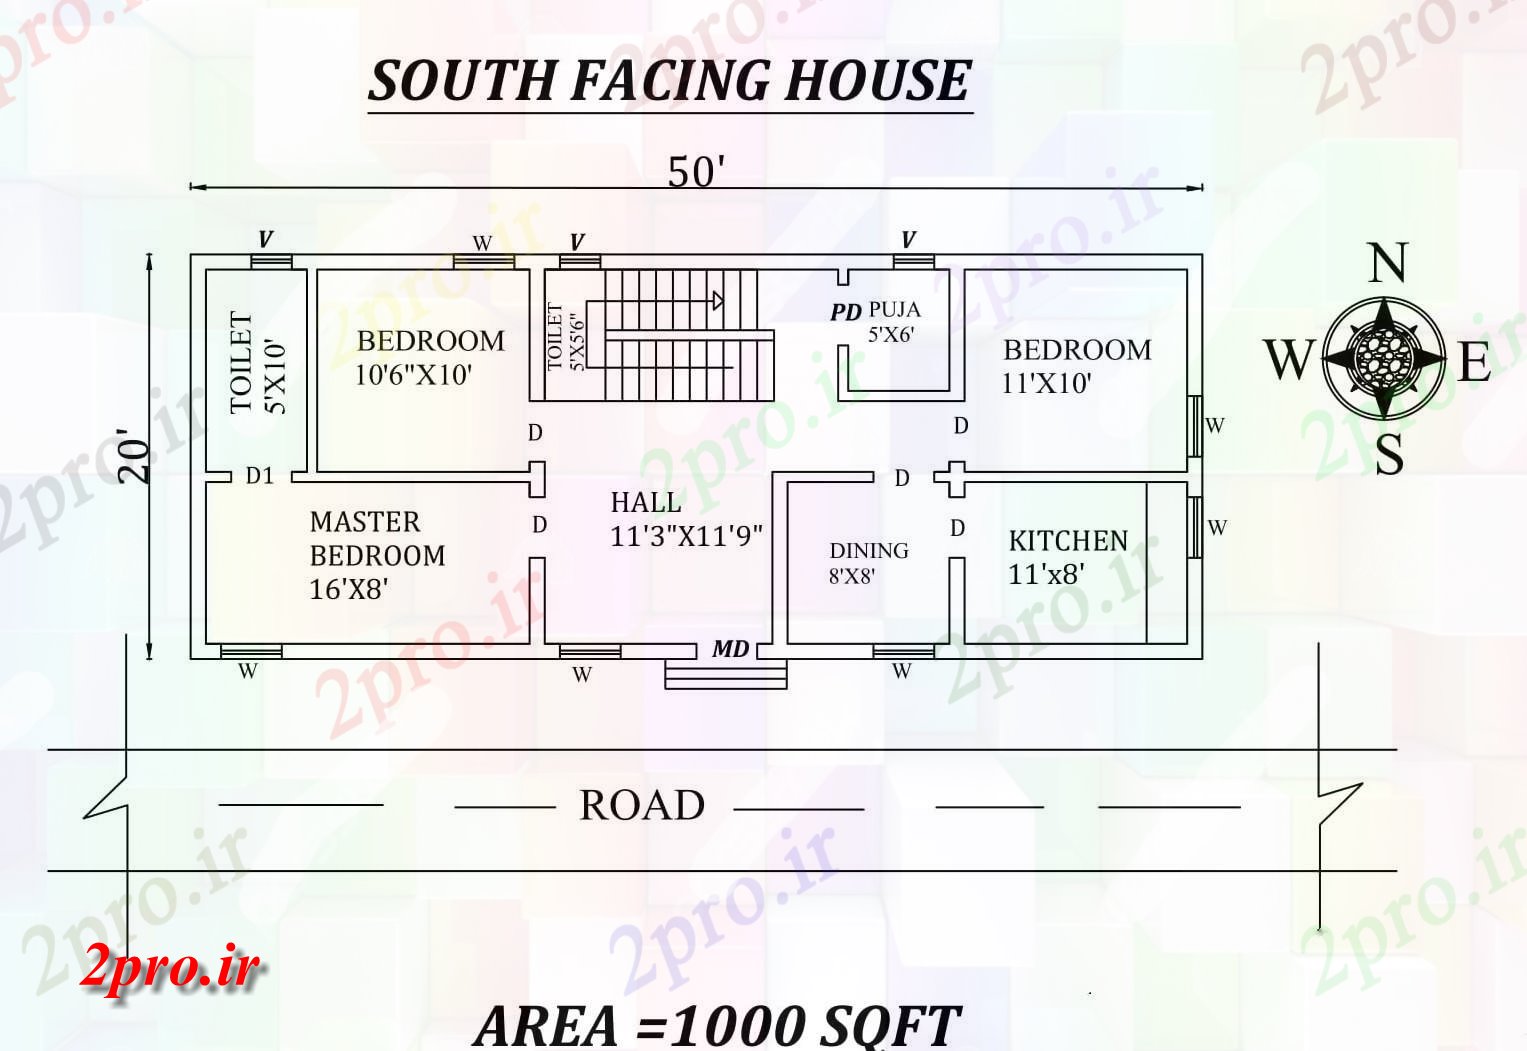 دانلود نقشه 50'x20، 3BHK جنوبی روبرو جزئیات فایل مجلس طرح به عنوان در هر Vastu را Shatra- اتوکد 24 در 60 متر (کد29904)